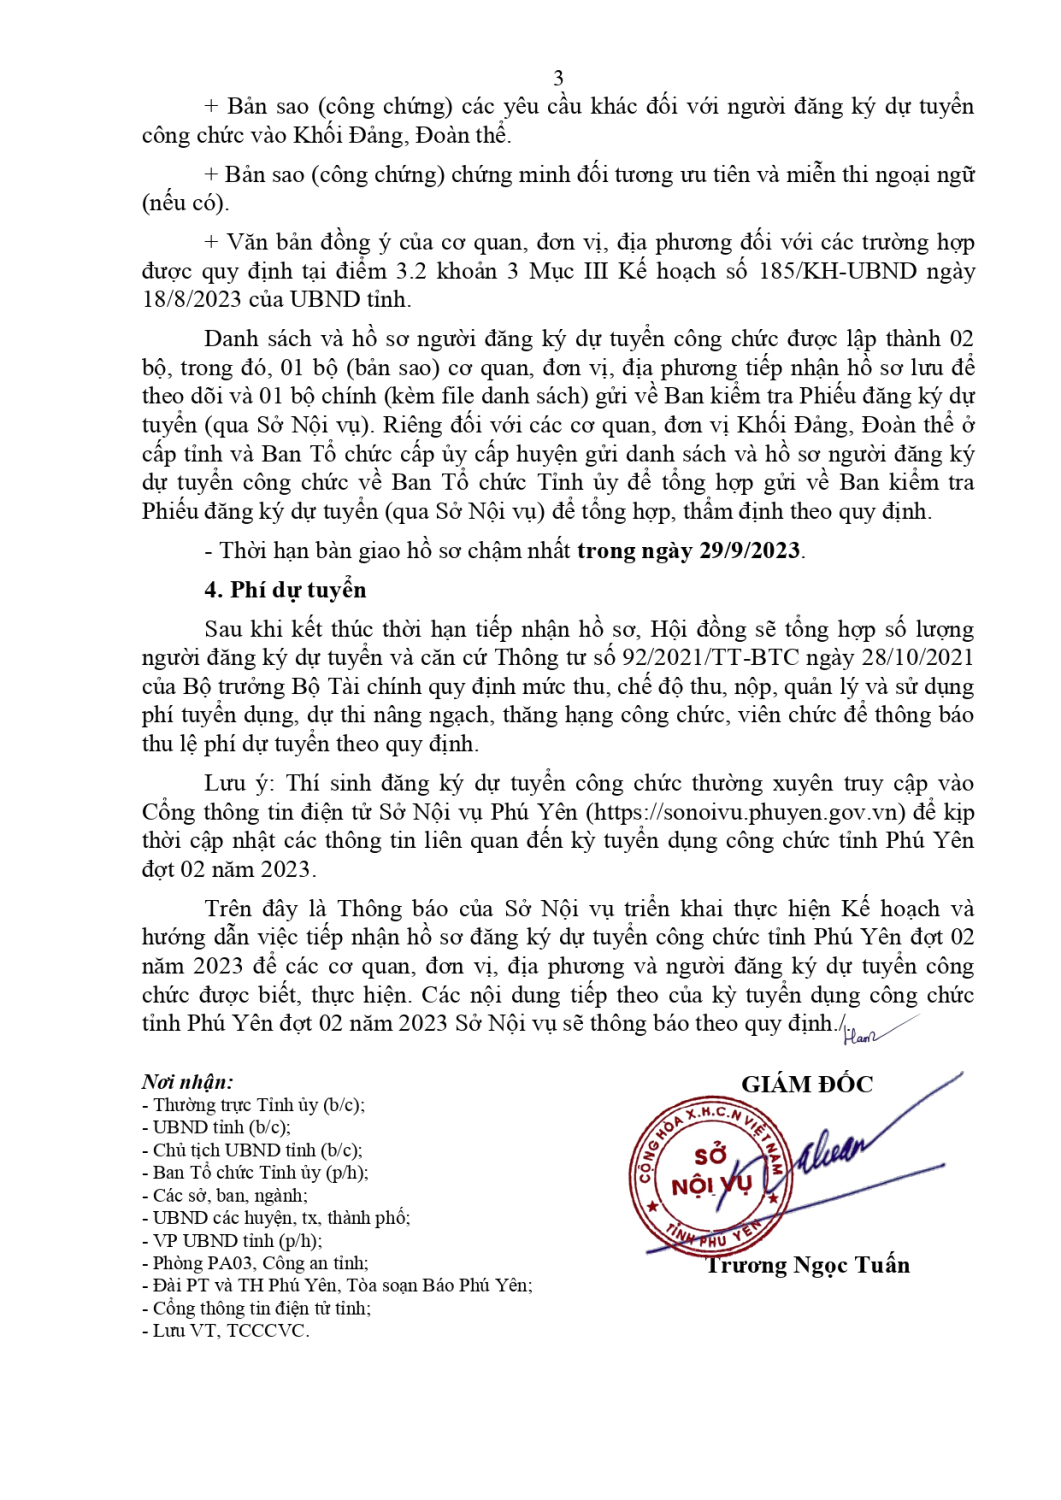 So Noi vu TB 57 TB triển khai kế hoạch tuyển dụng công chức tỉnh Phú Yên đợt 02 năm 2023 page 0003